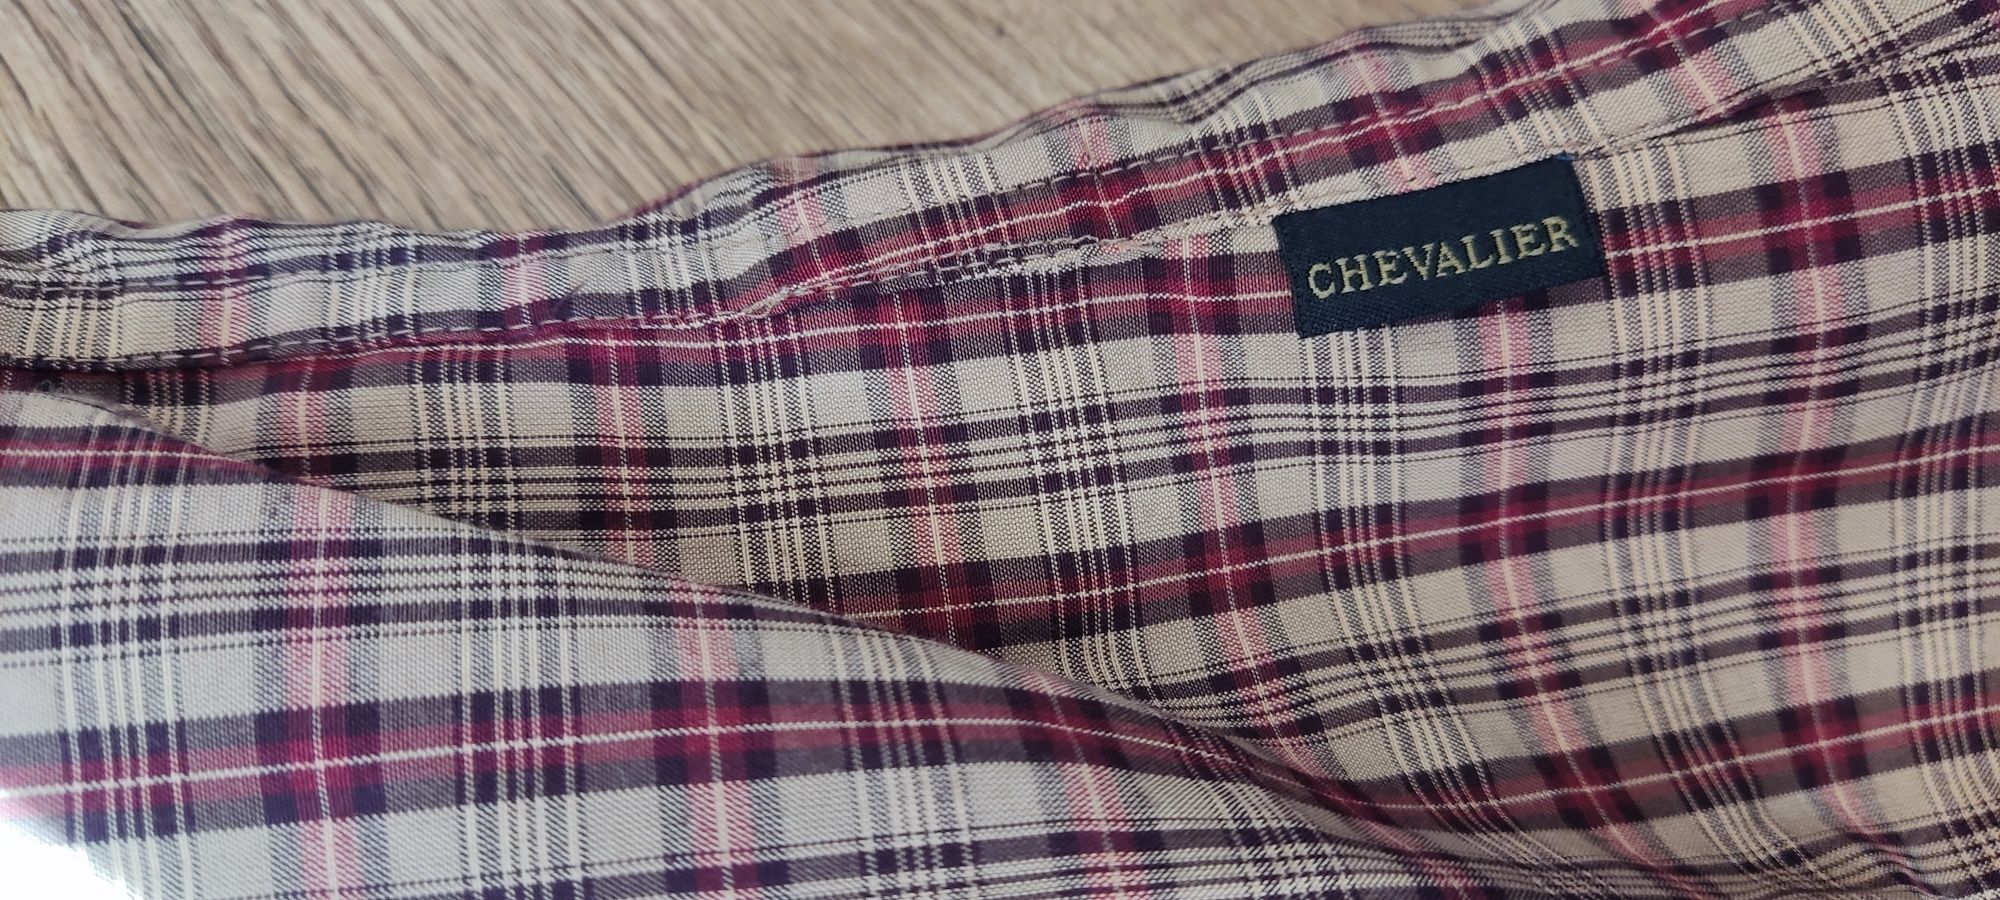 Женска дамска риза Chevalier, С, лов, ловна, cool max, нова с етикет